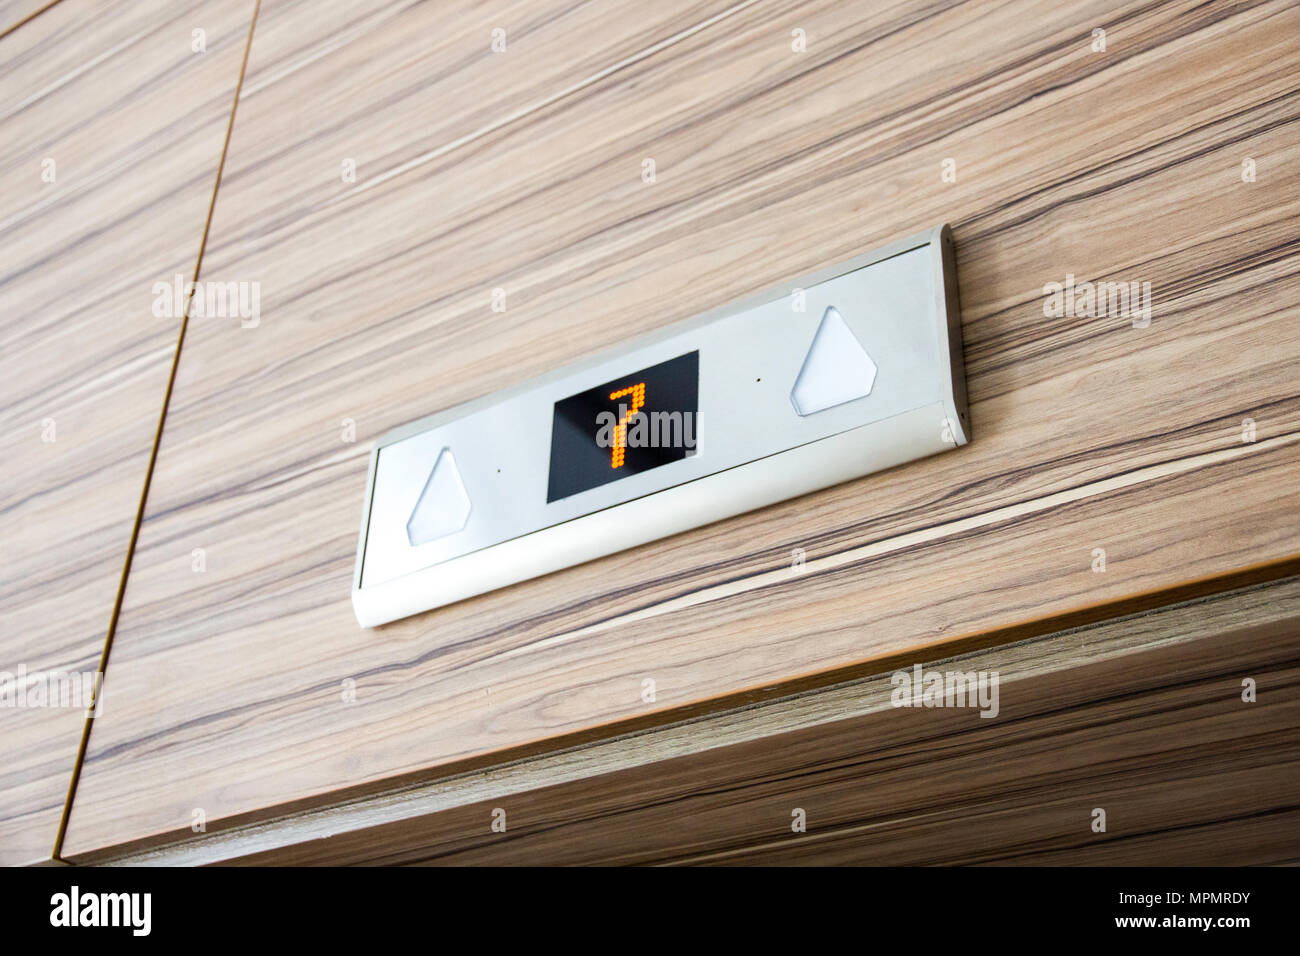 Über Fahrstuhl Tür digitales Display mit Nummer sieben Stock Stockfoto